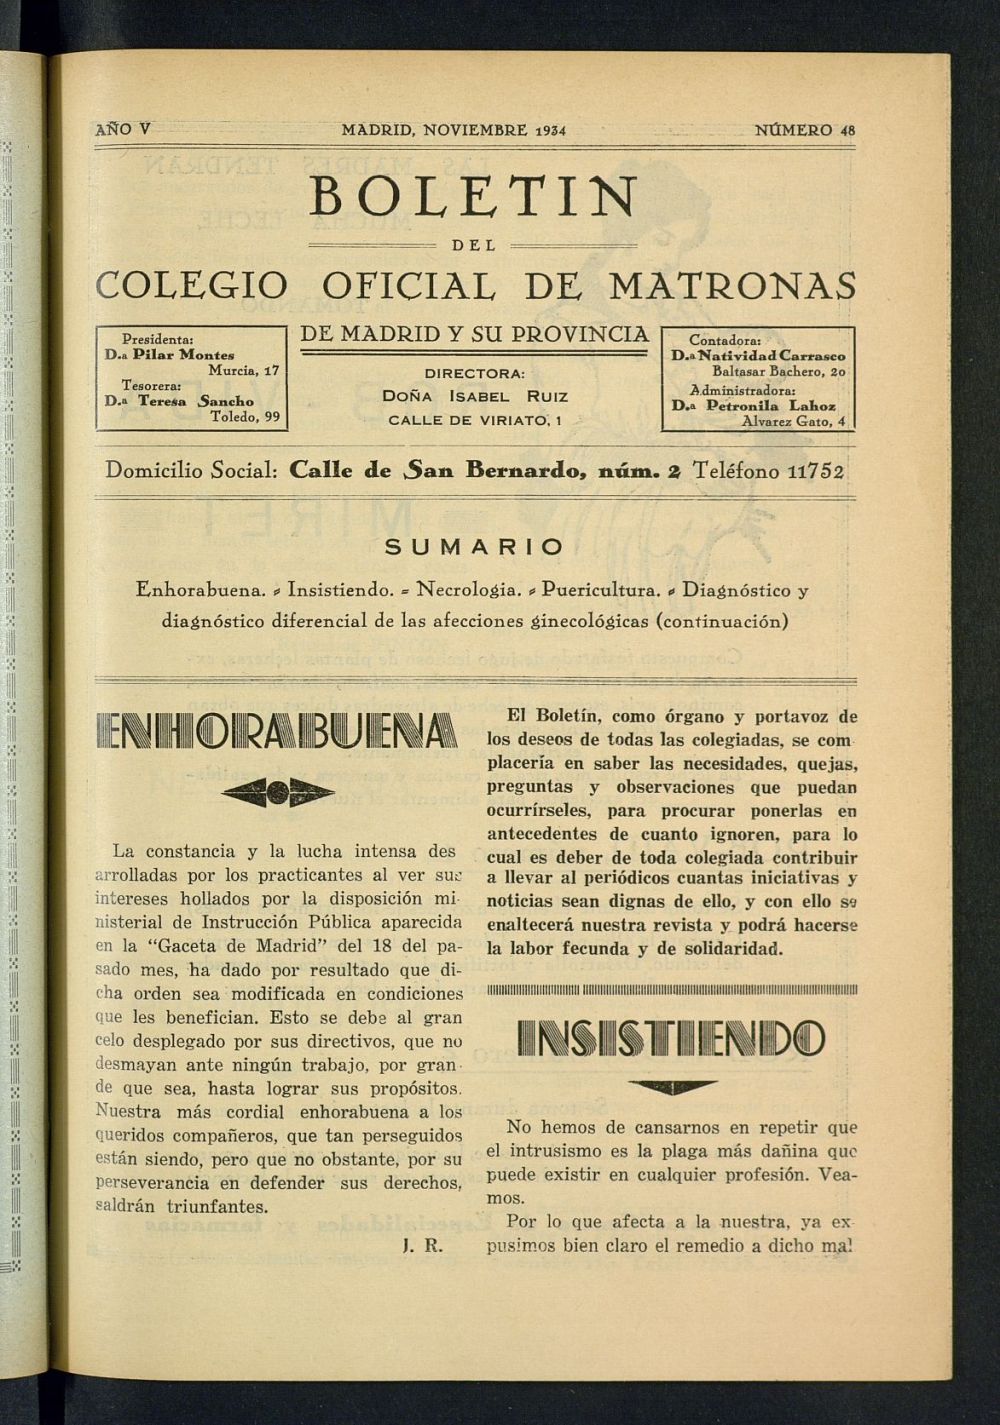 Boletn del Colegio Oficial de Matronas de Madrid y su Provincia de noviembre de 1934